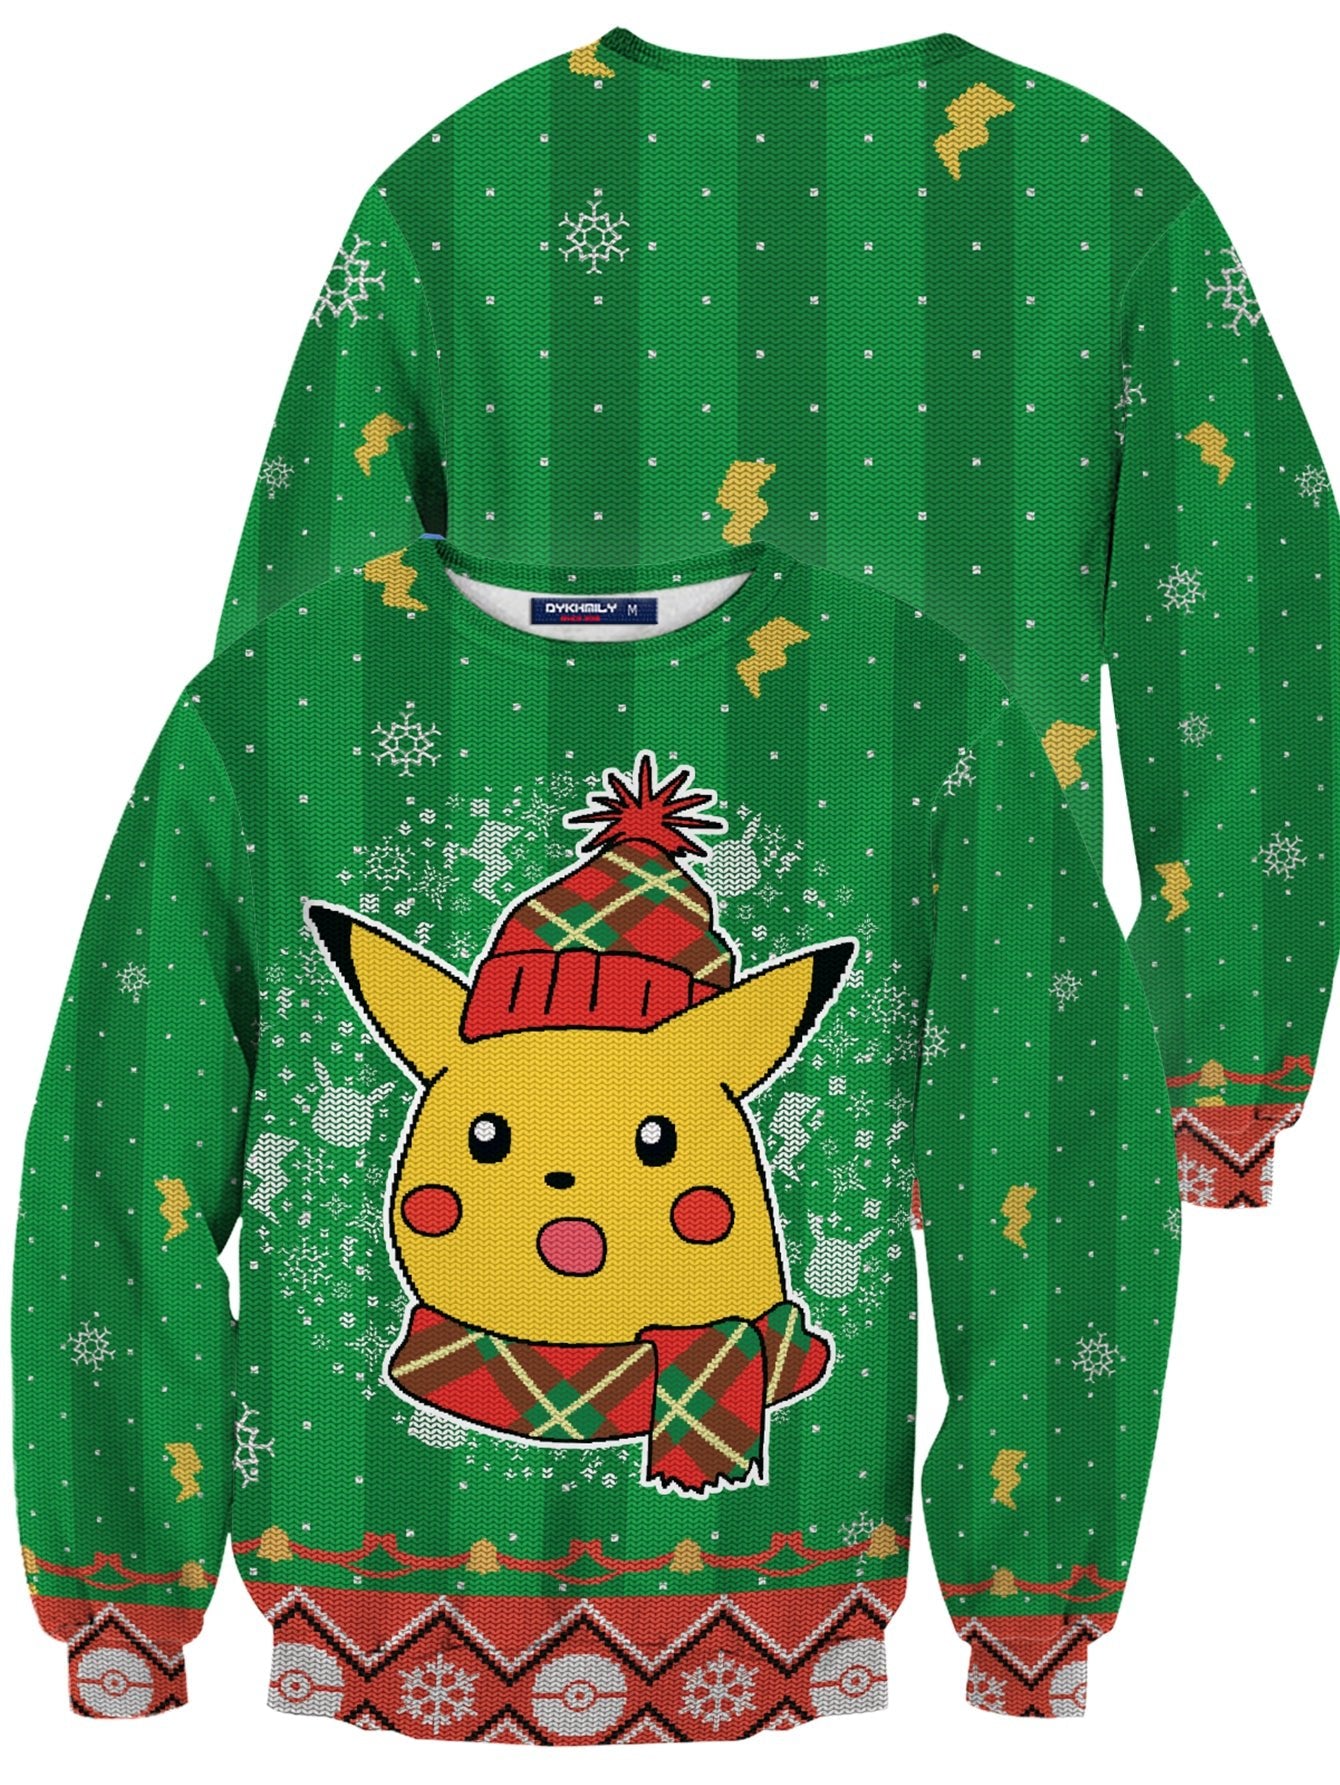 Fandomaniax - [Buy 1 Get 1 SALE] Shocked Pikachu Unisex Wool Sweater